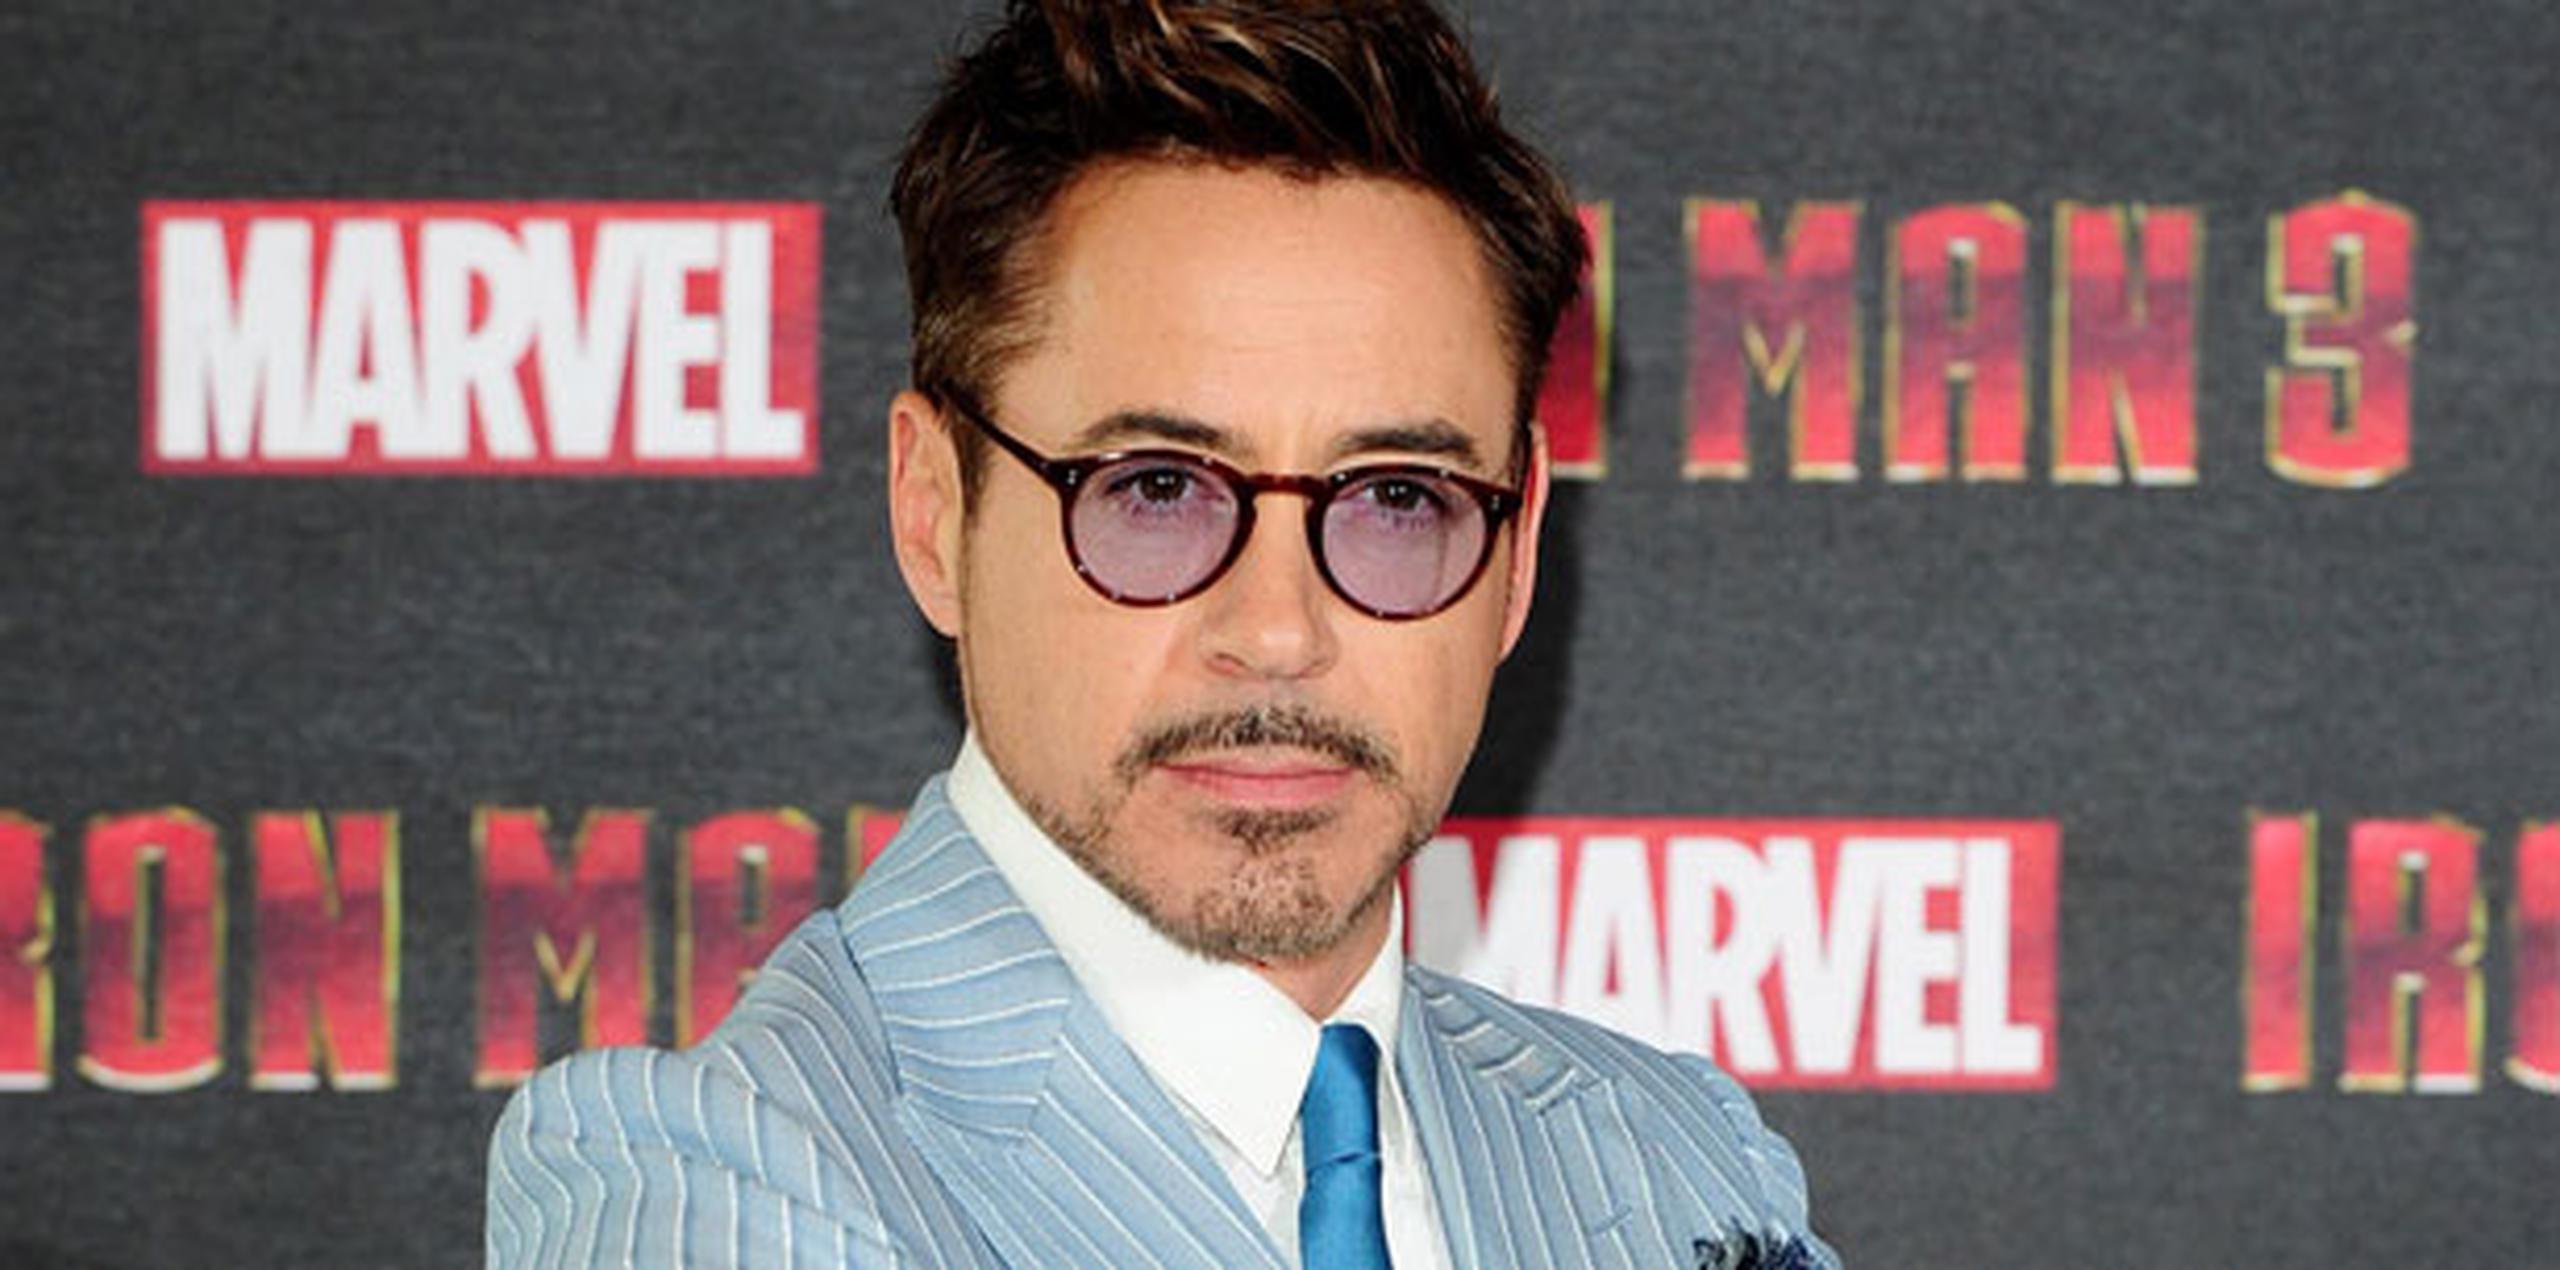 Se trata del primer papel en años de Downey Jr. más allá del universo cinematográfico de Marvel, en el que interpreta al personaje de Iron Man en las diferentes películas interconectadas de esta saga. (Archivo)